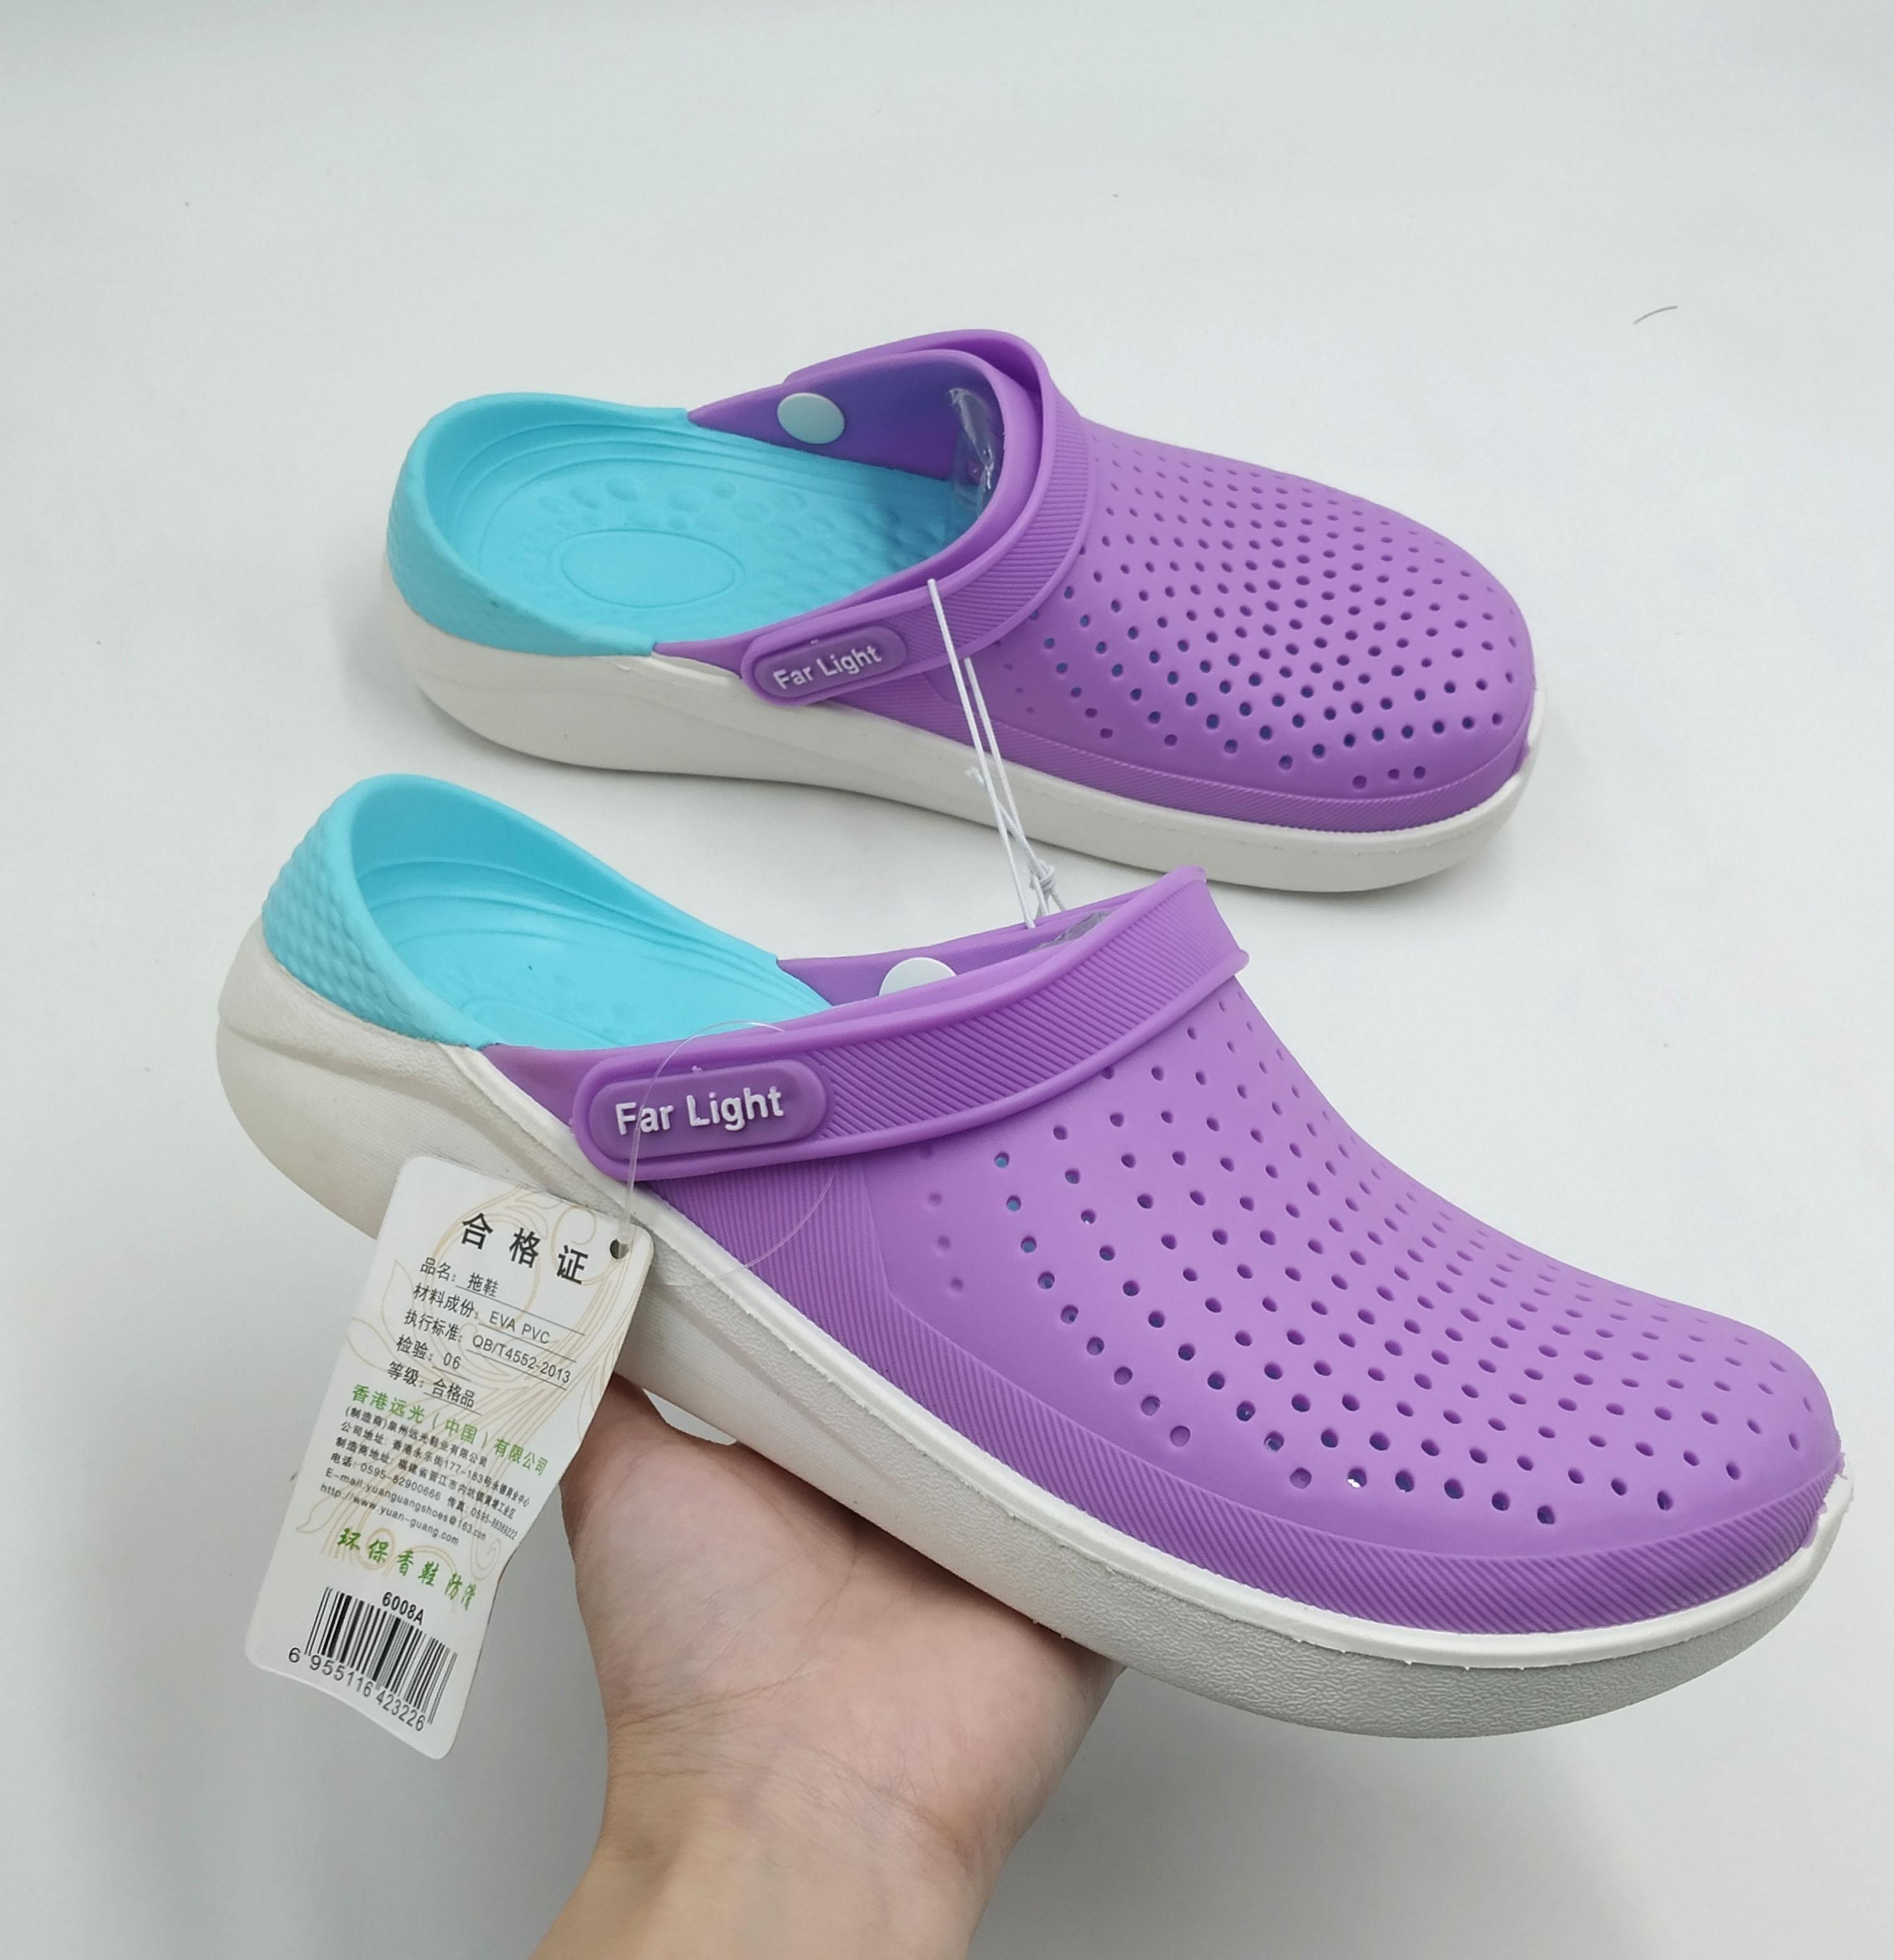 FAR LIGHT Clog Shoes for Women: Buy 